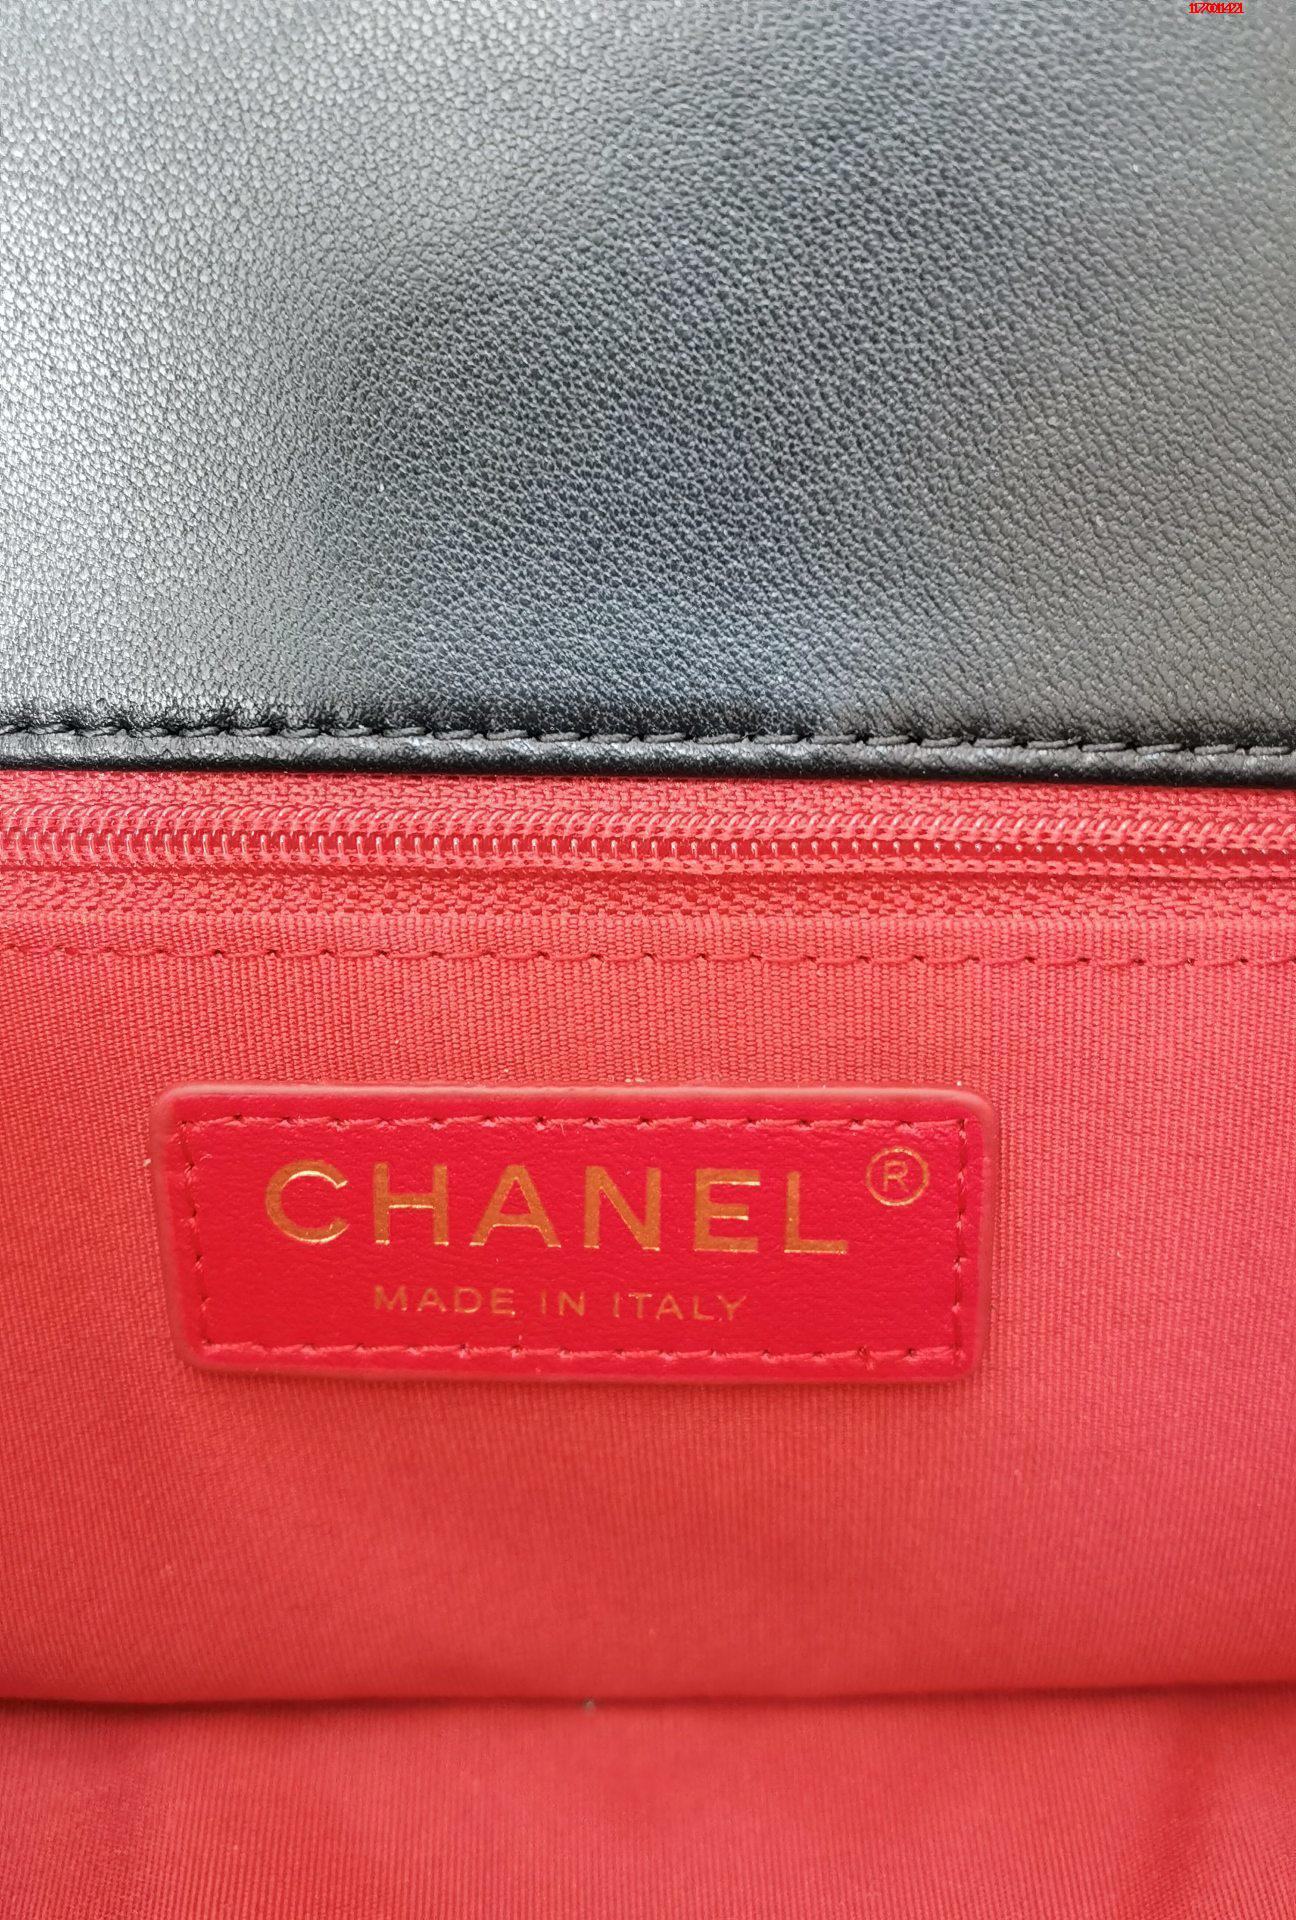 Chanel 21早春宝石链条包 香奈儿链条包 AS2380